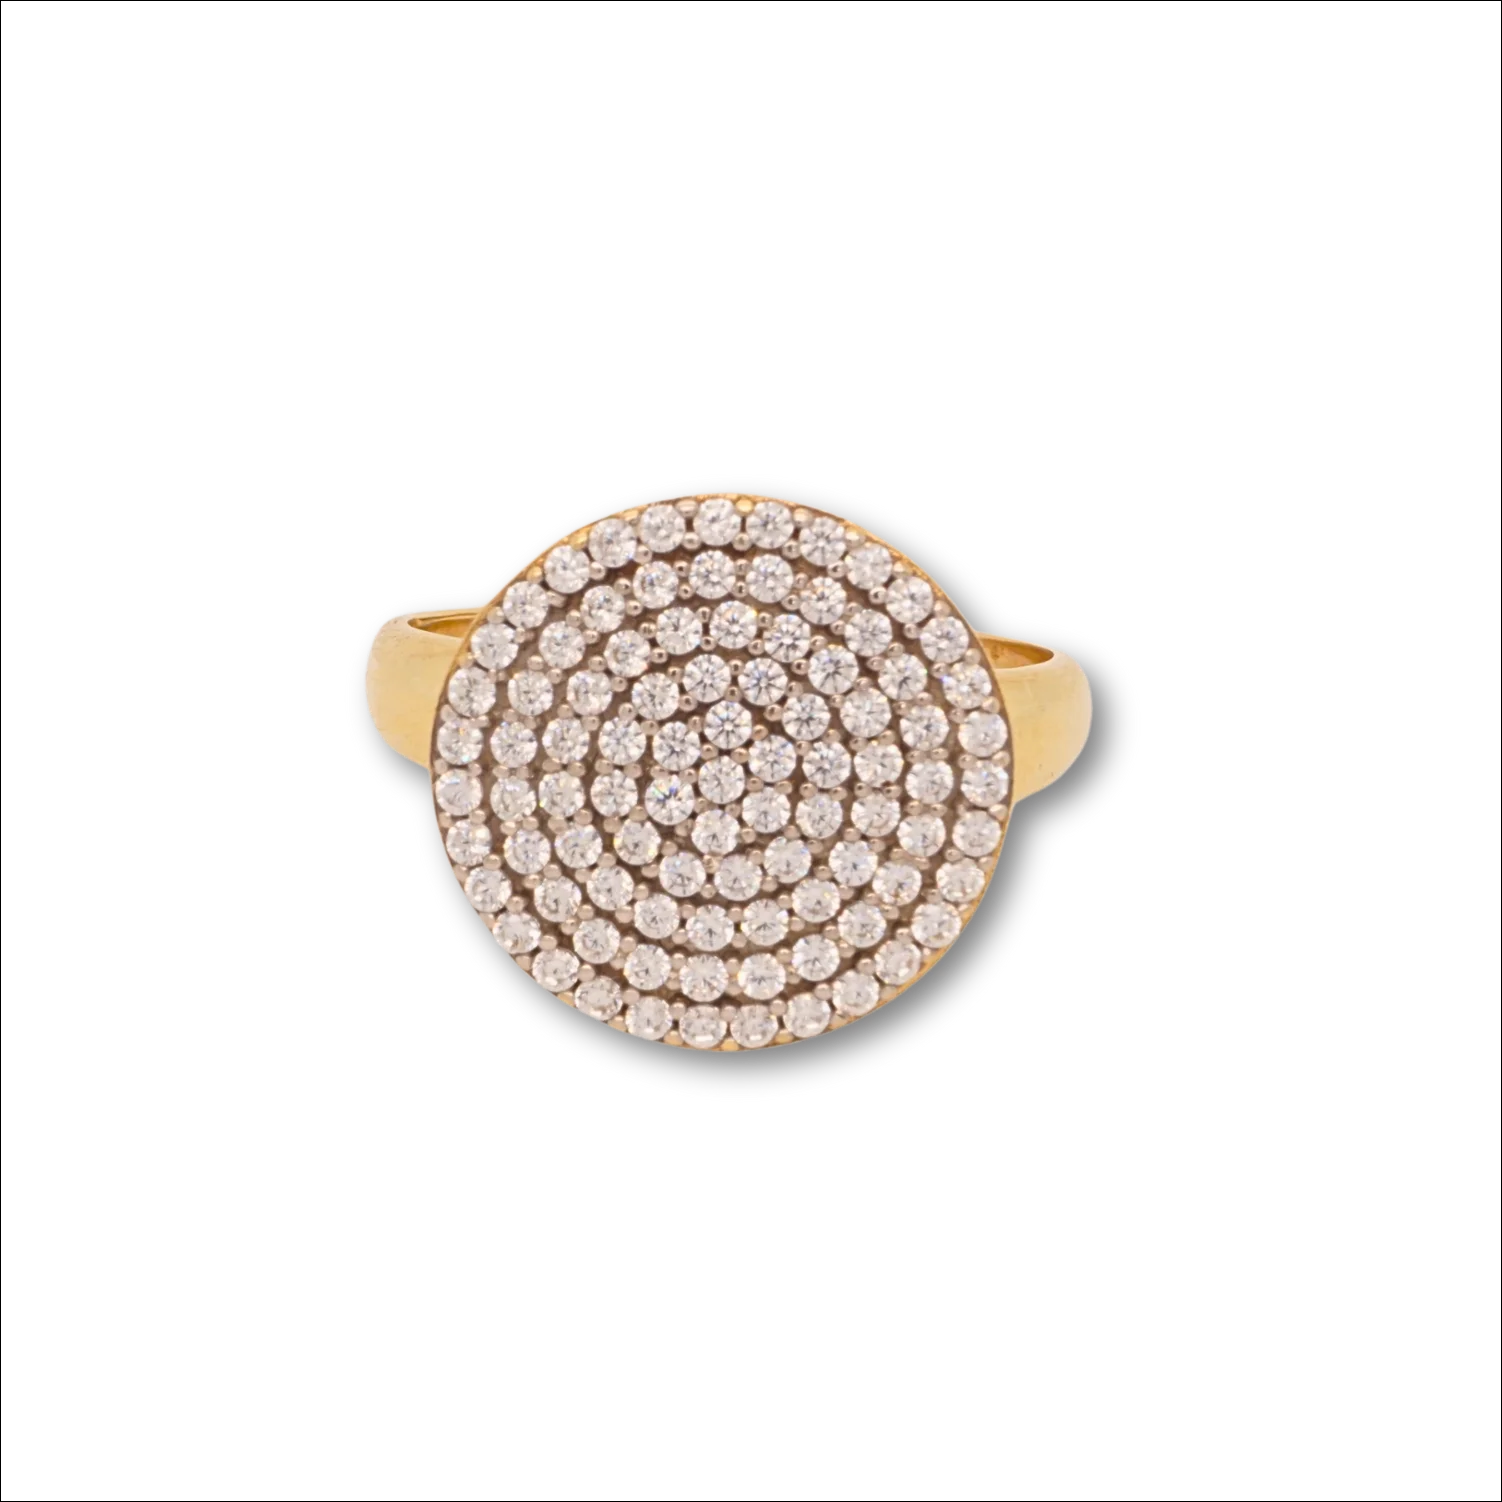 Timeless elegance 18k gold cz ring | Rings